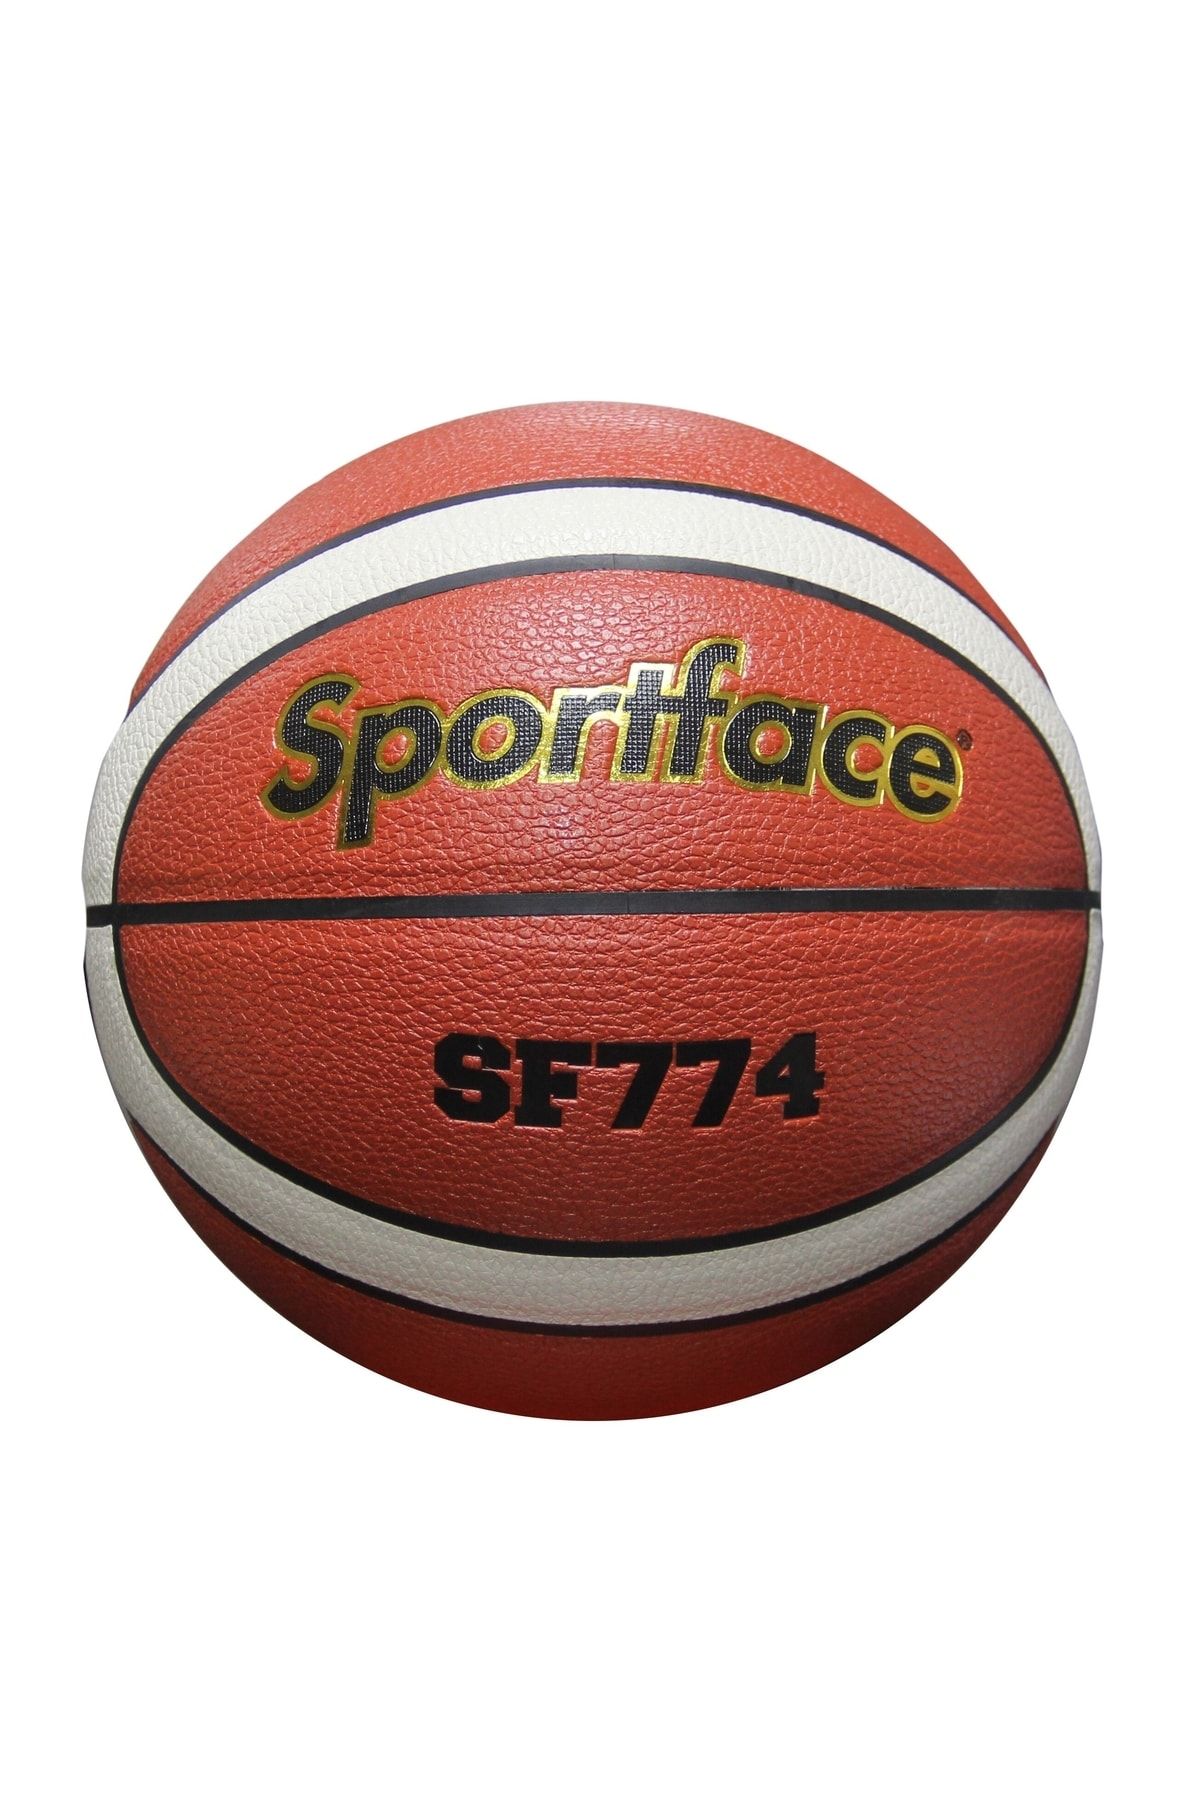 The Sport Face Sportface Sf-774 # 7 Basketbol Deri Maç Topu 12 Panelli